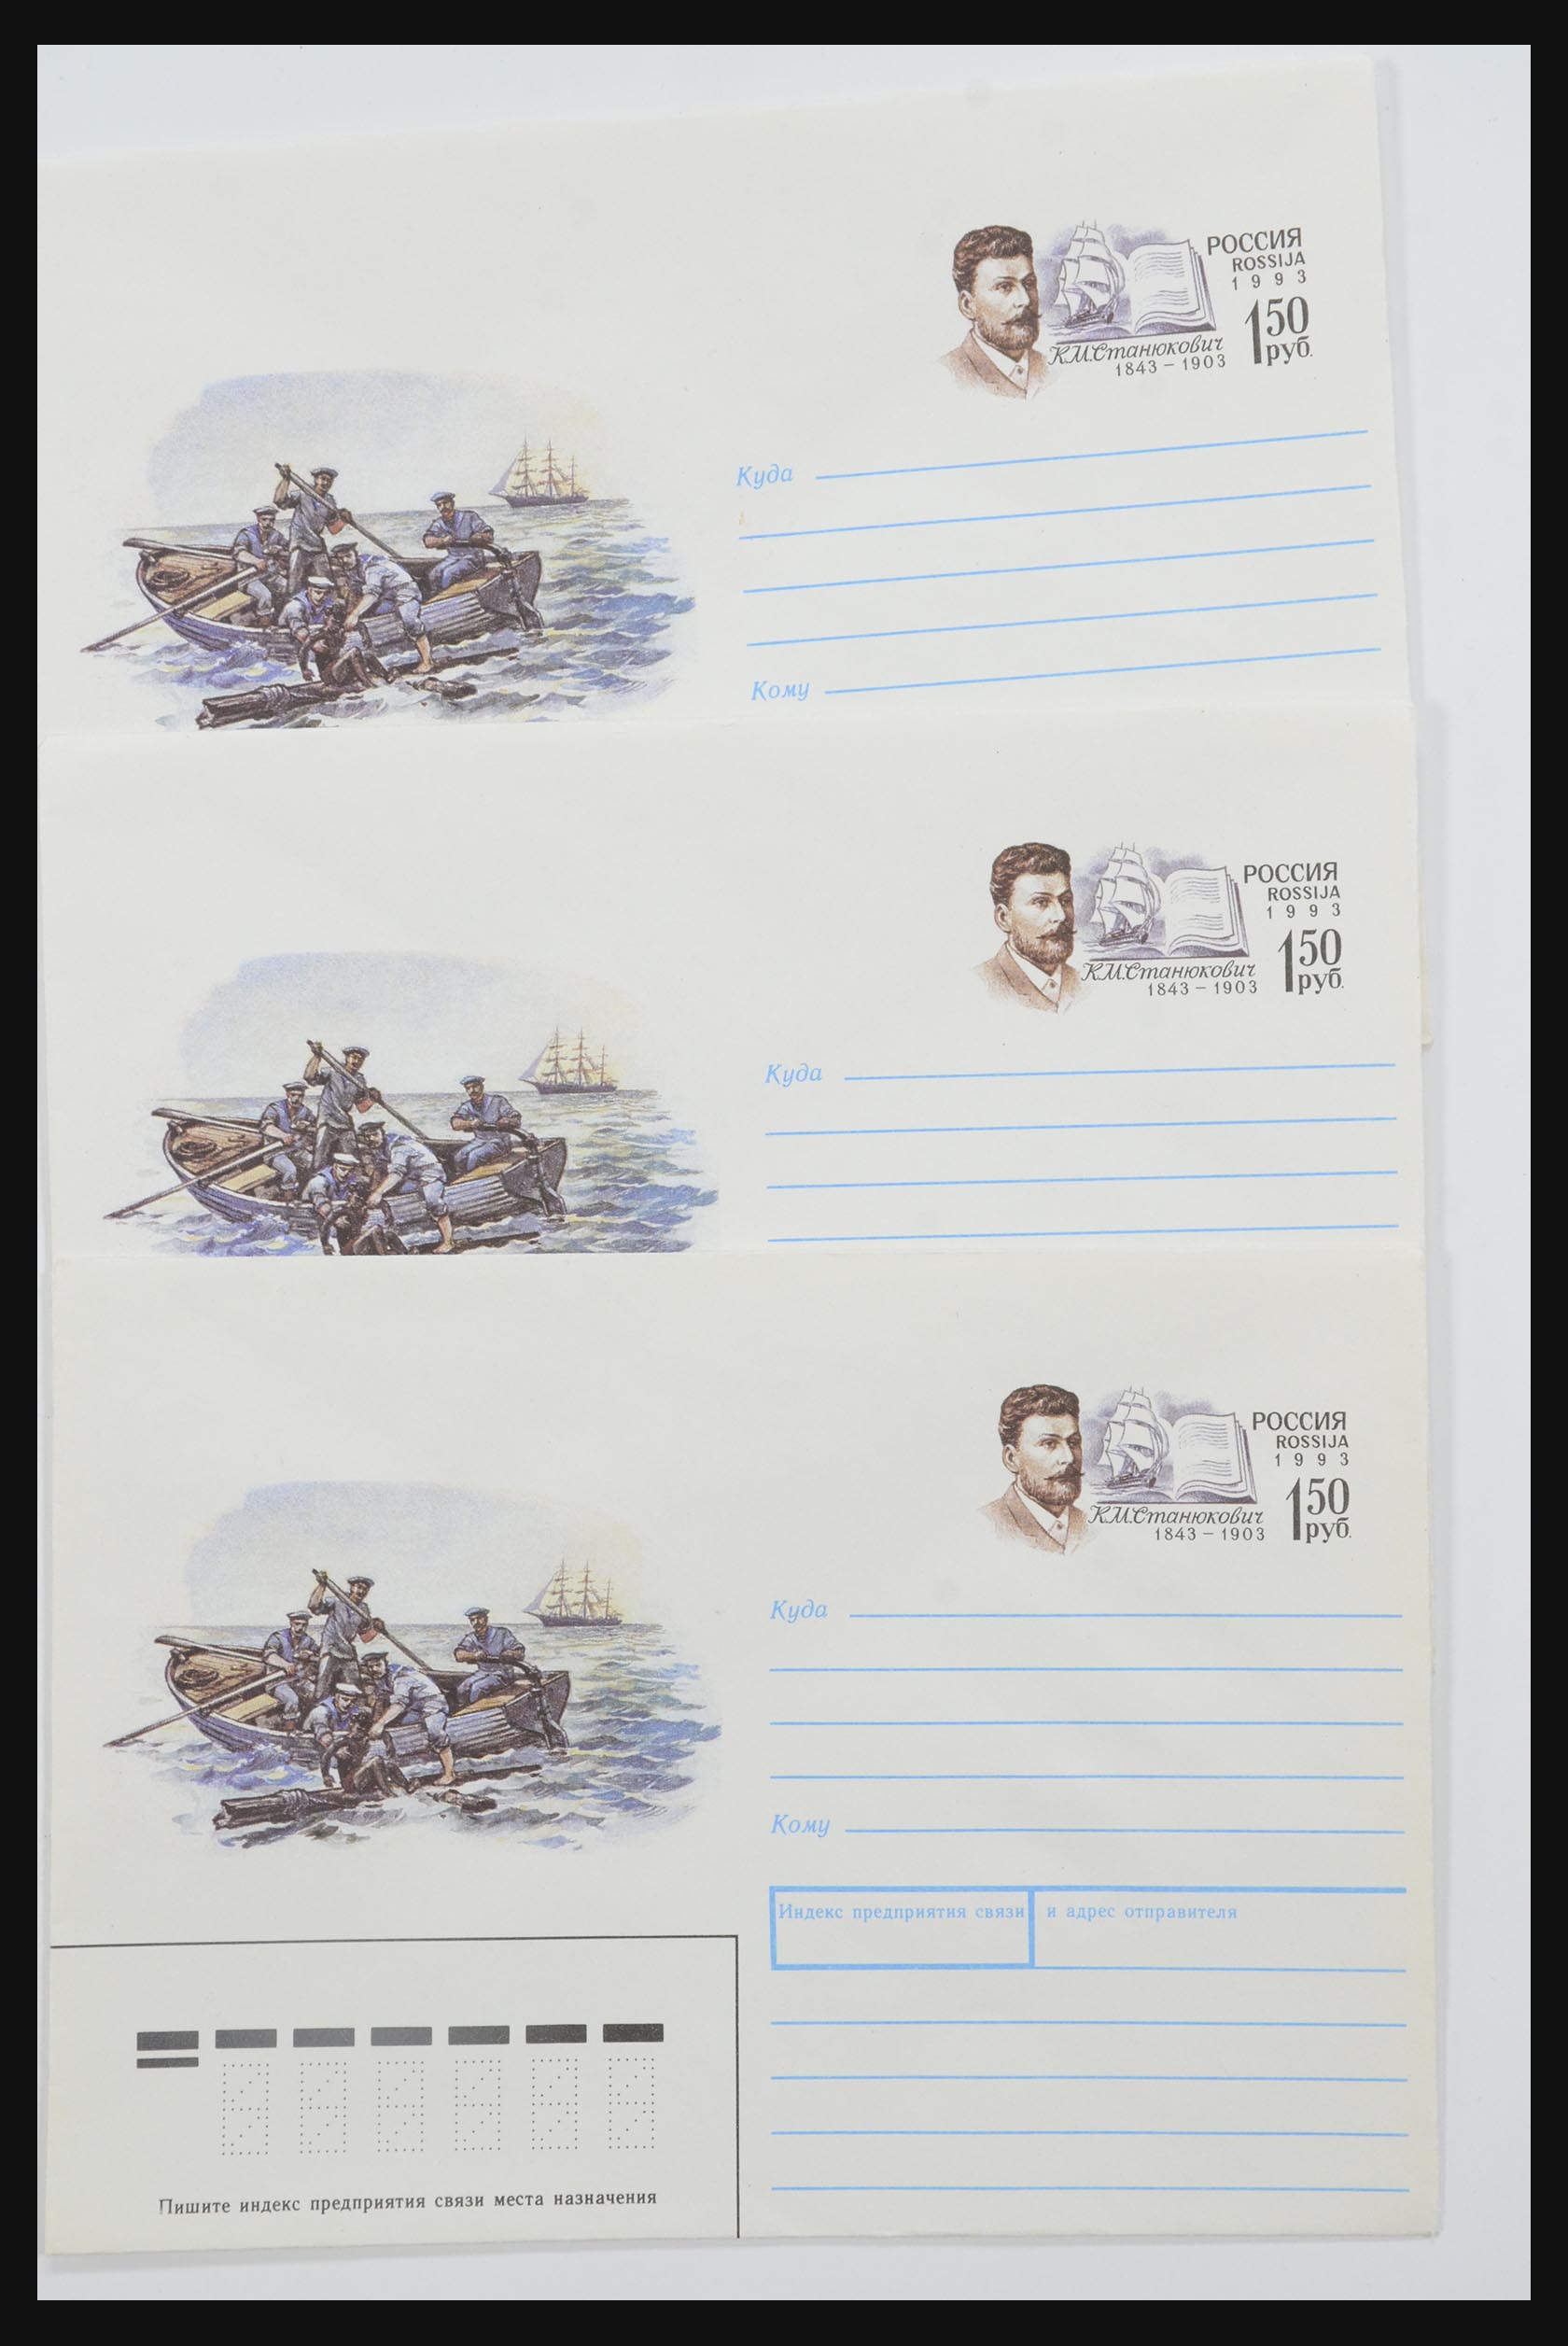 31605 1234 - 31605 Rusland postwaardestukken jaren 50-60.